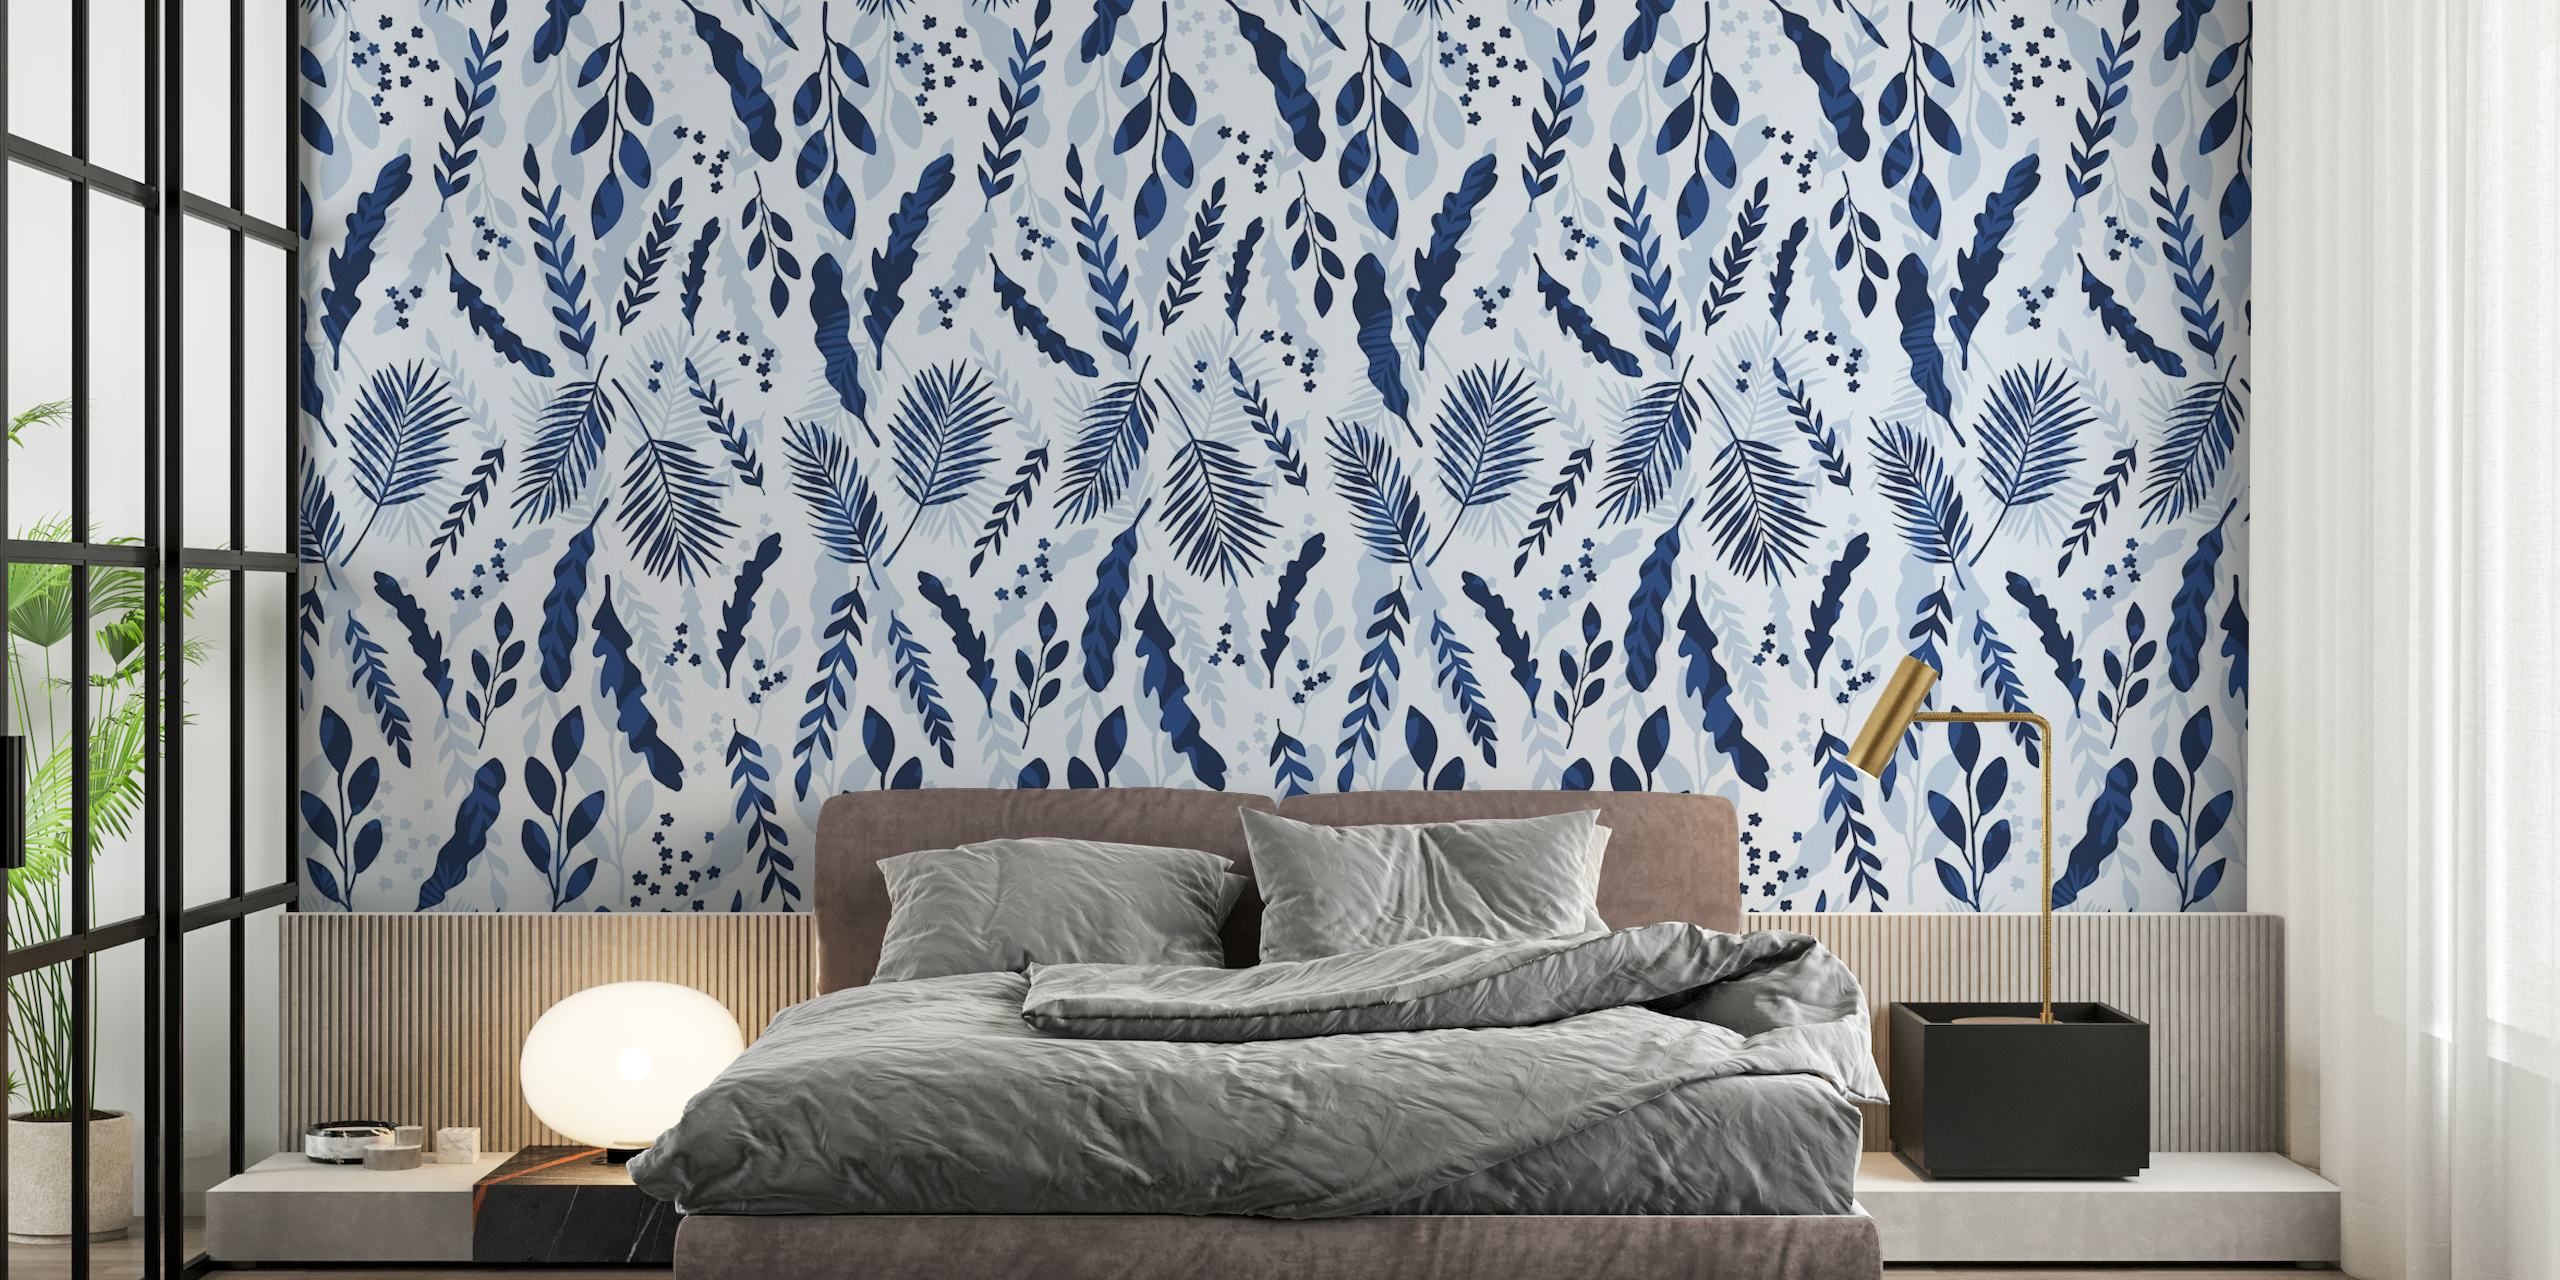 Blauwe en witte mariene botanische patroon muurschildering